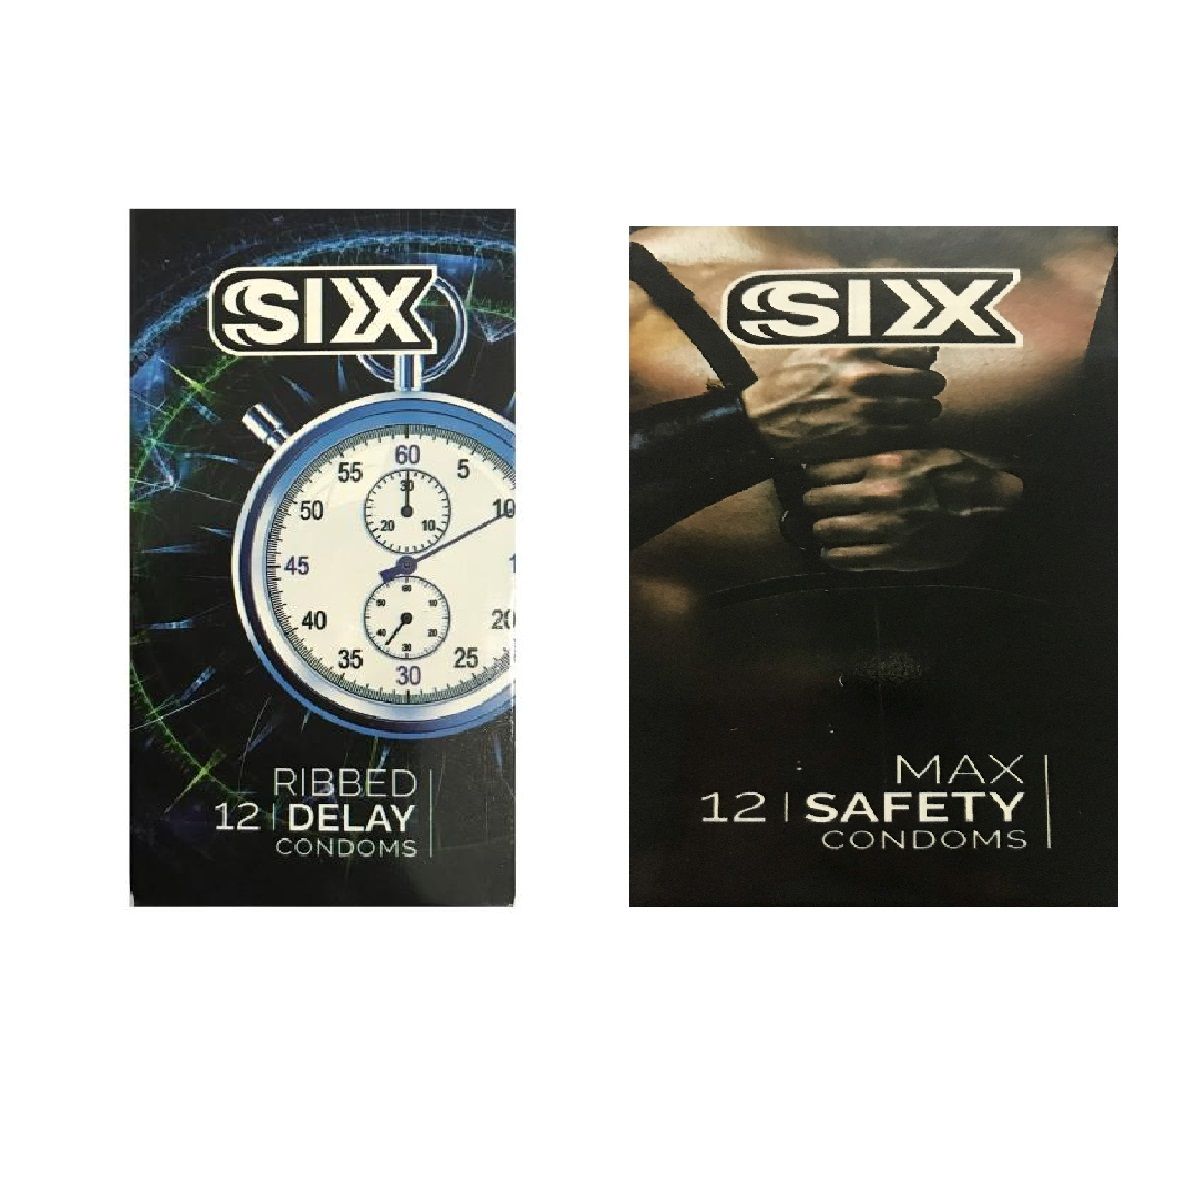 کاندوم سیکس مدل Ribbed Delay بسته 12 عددی به همراه کاندوم سیکس مدل Max Safety بسته 12 عددی -  - 1